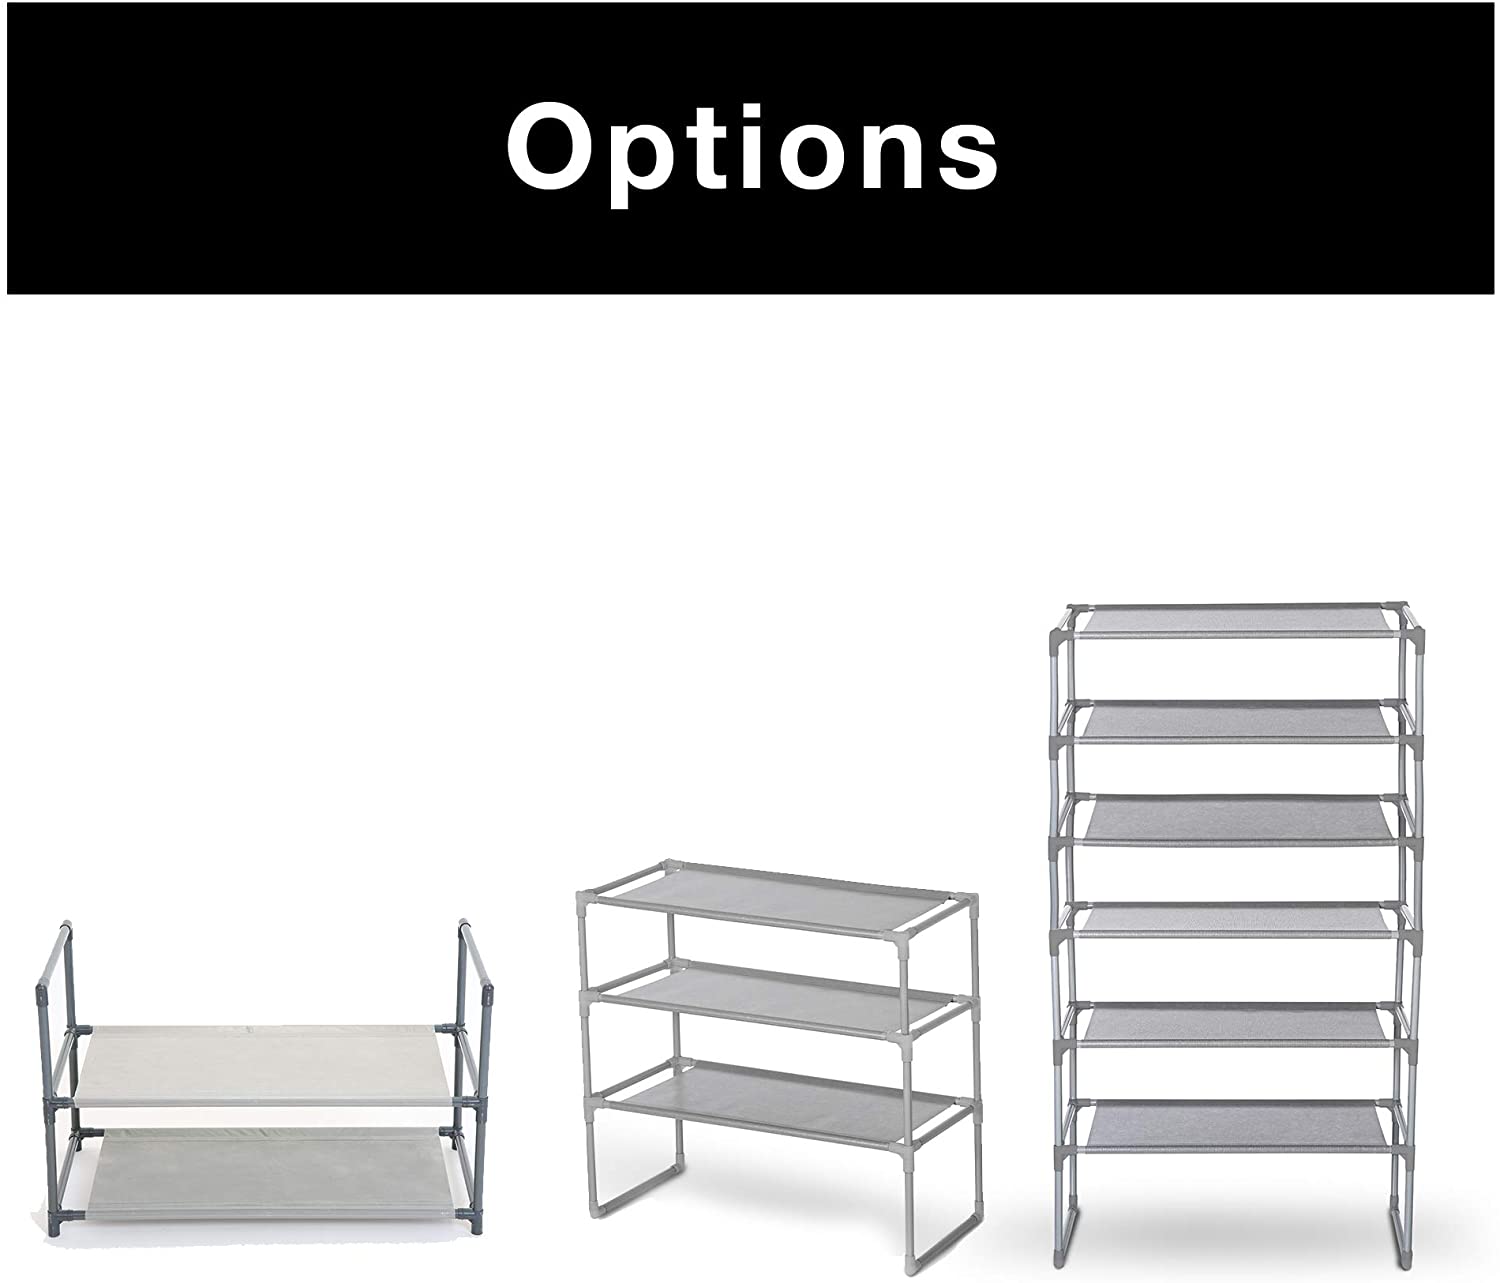 Shoe Rack Shelf with Laminated Liner - Smart Design® 26